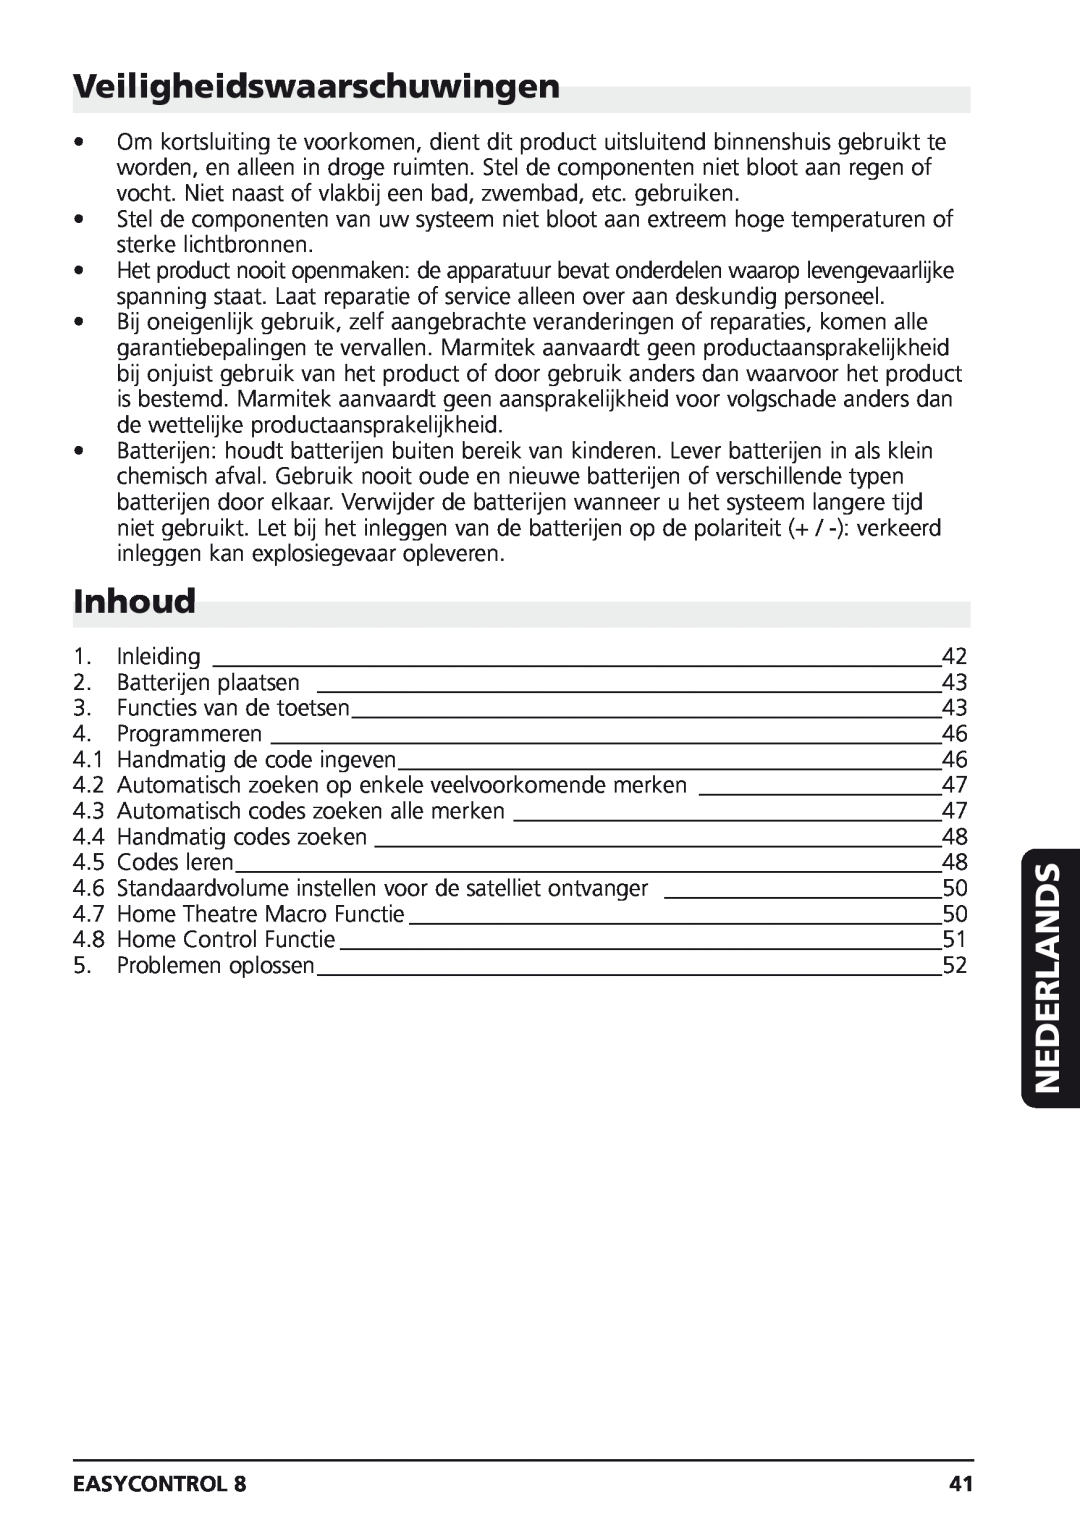 Marmitek Easycontrol 8 owner manual Veiligheidswaarschuwingen, Inhoud, Nederlands 